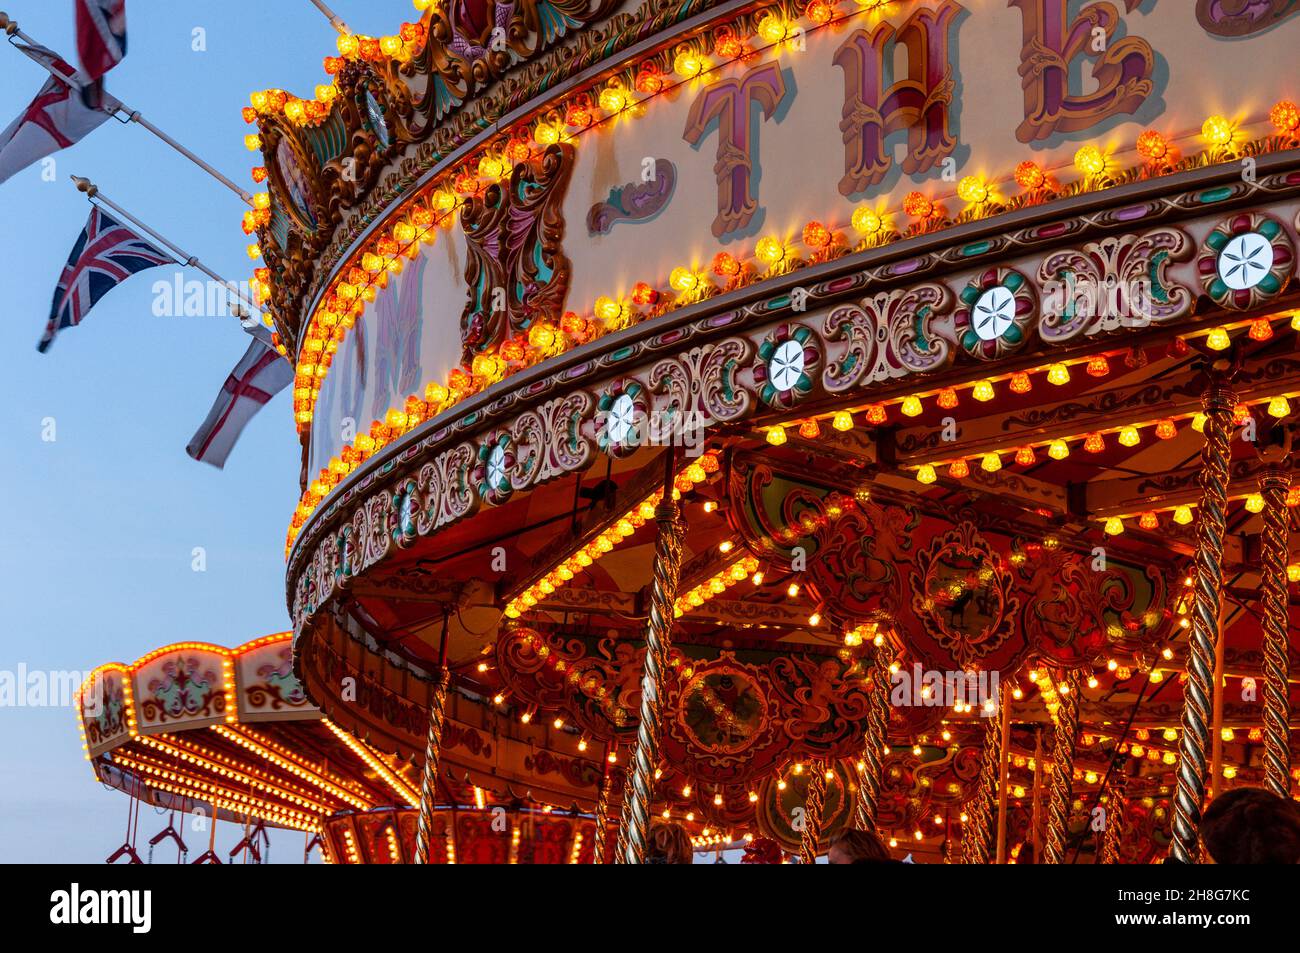 Classic Carousel, Merry Go Round, beim Goodwood Revival Vintage Event 2014, bei Dämmerung mit Lichtern. Vergnügungsfahrt im Kreisverkehr Stockfoto